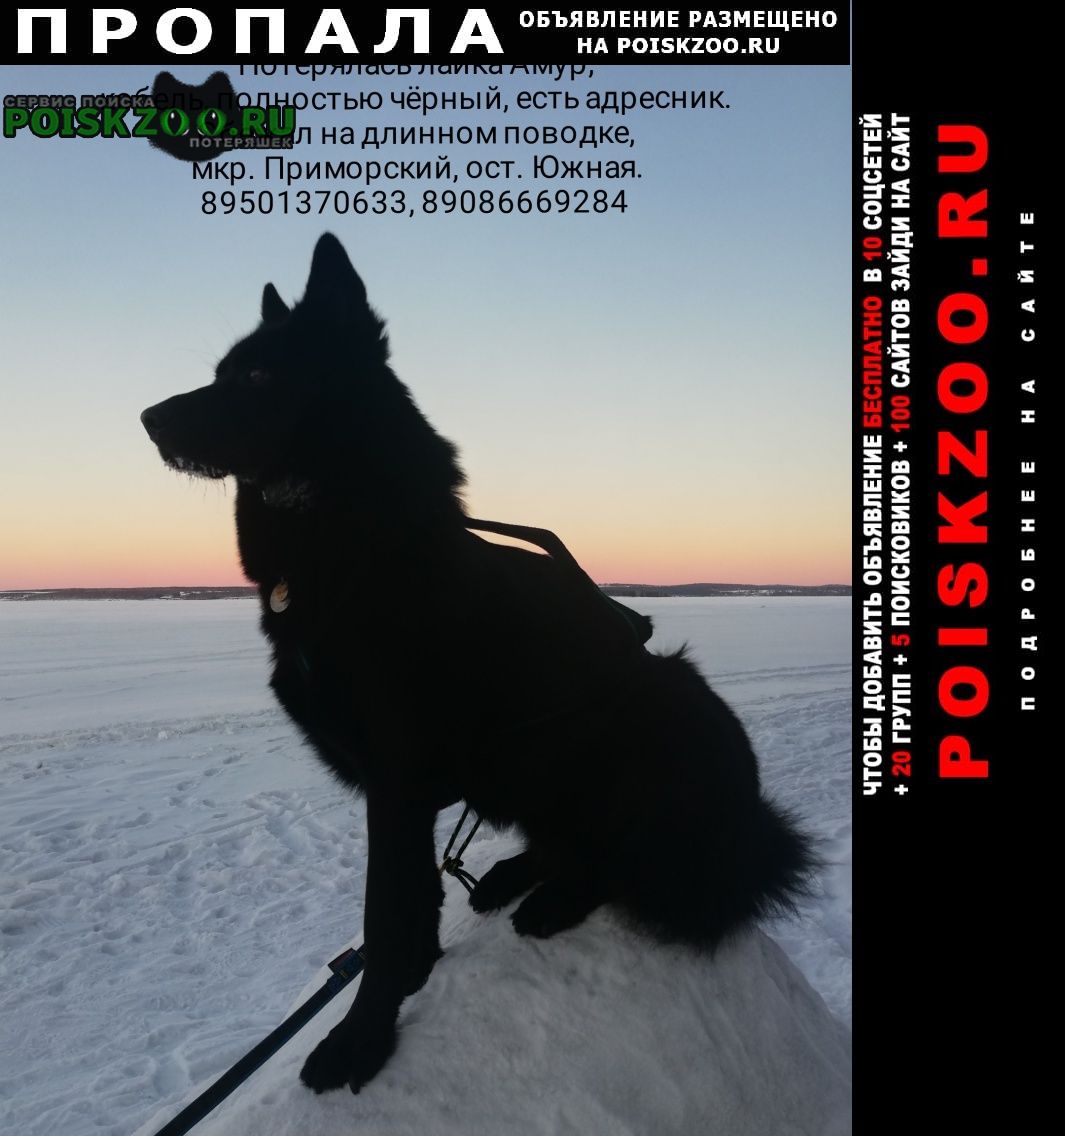 Пропала собака кобель лайка чёрная ост. южная, Иркутск